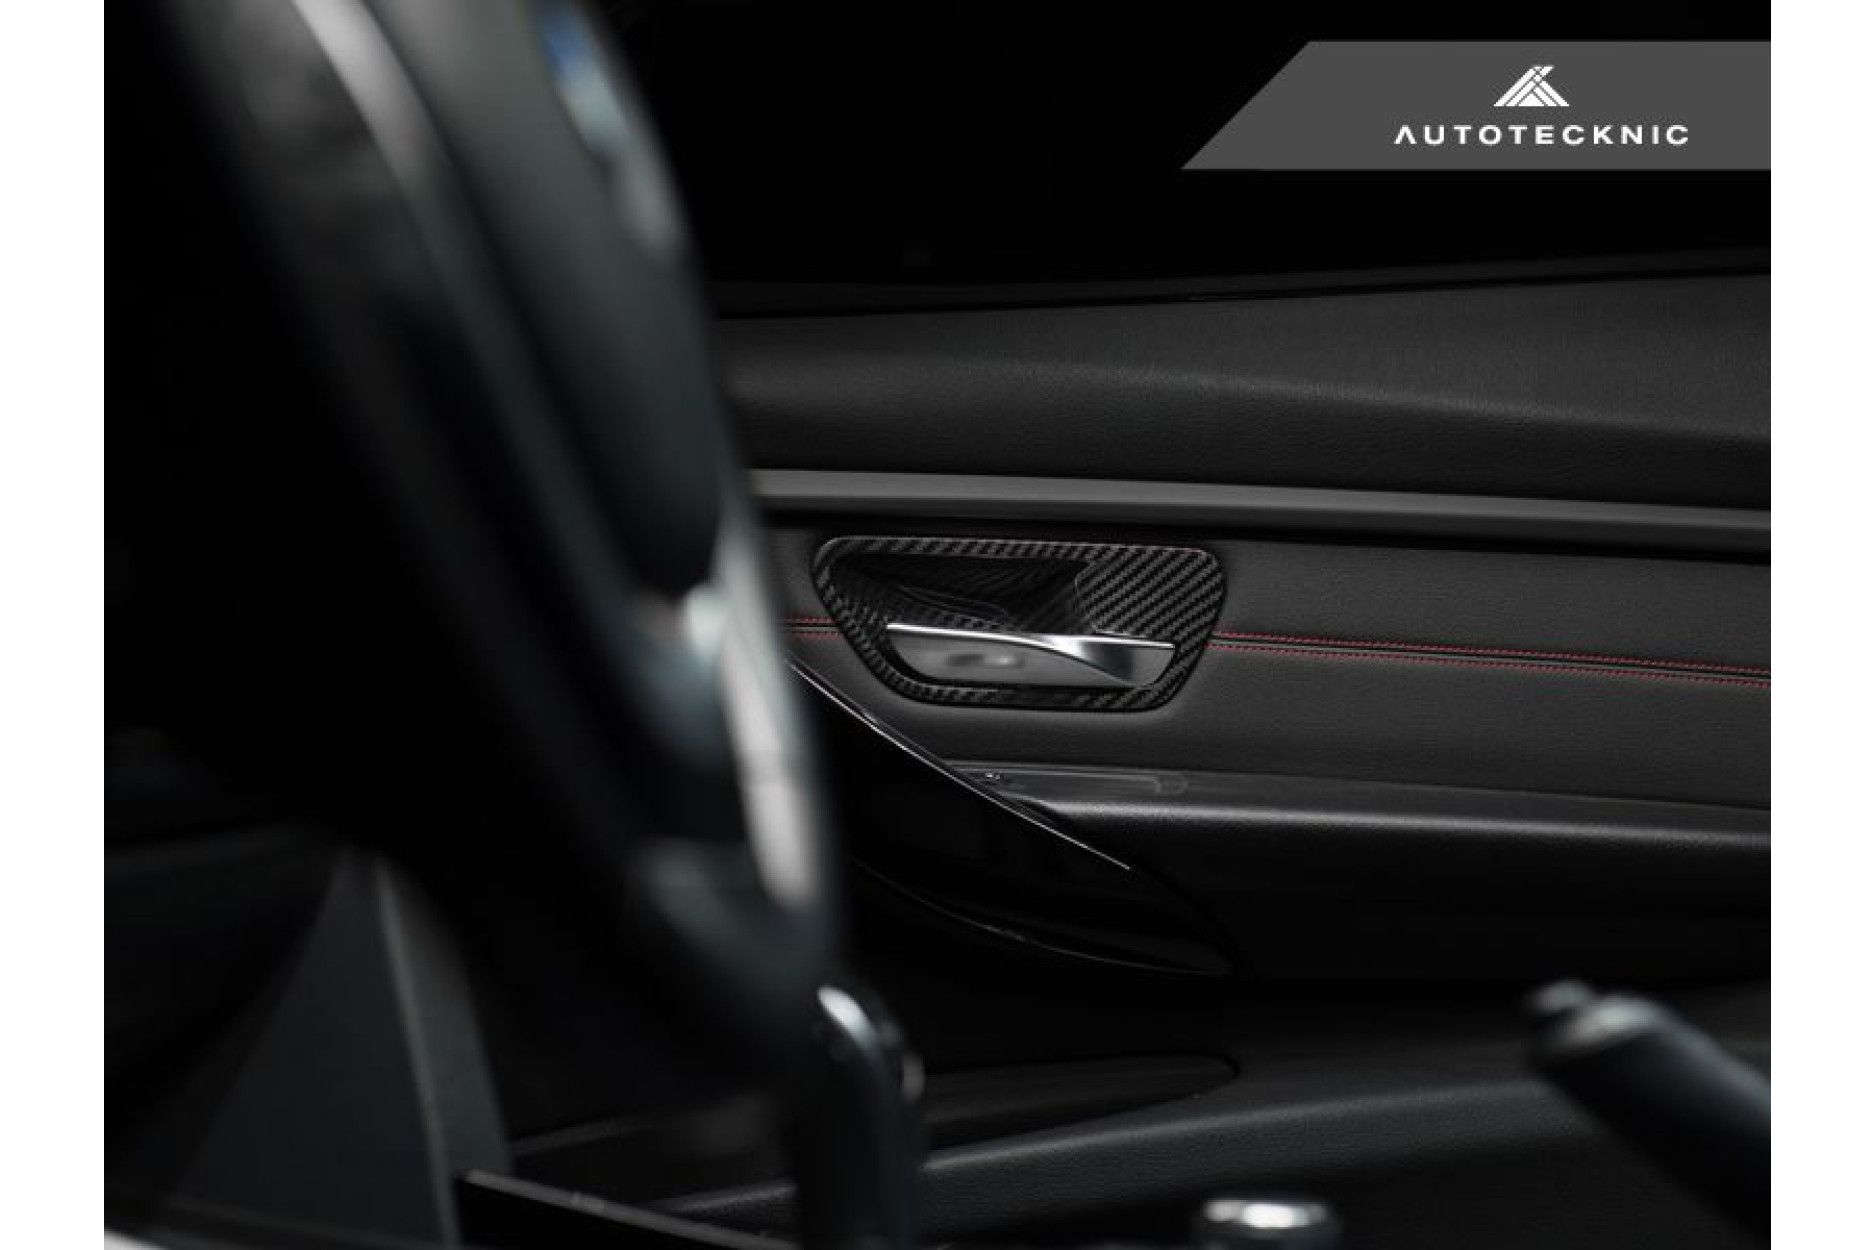 Autotecknic Carbon-Innentürgriffabdeckungen für BMW F-Chassis